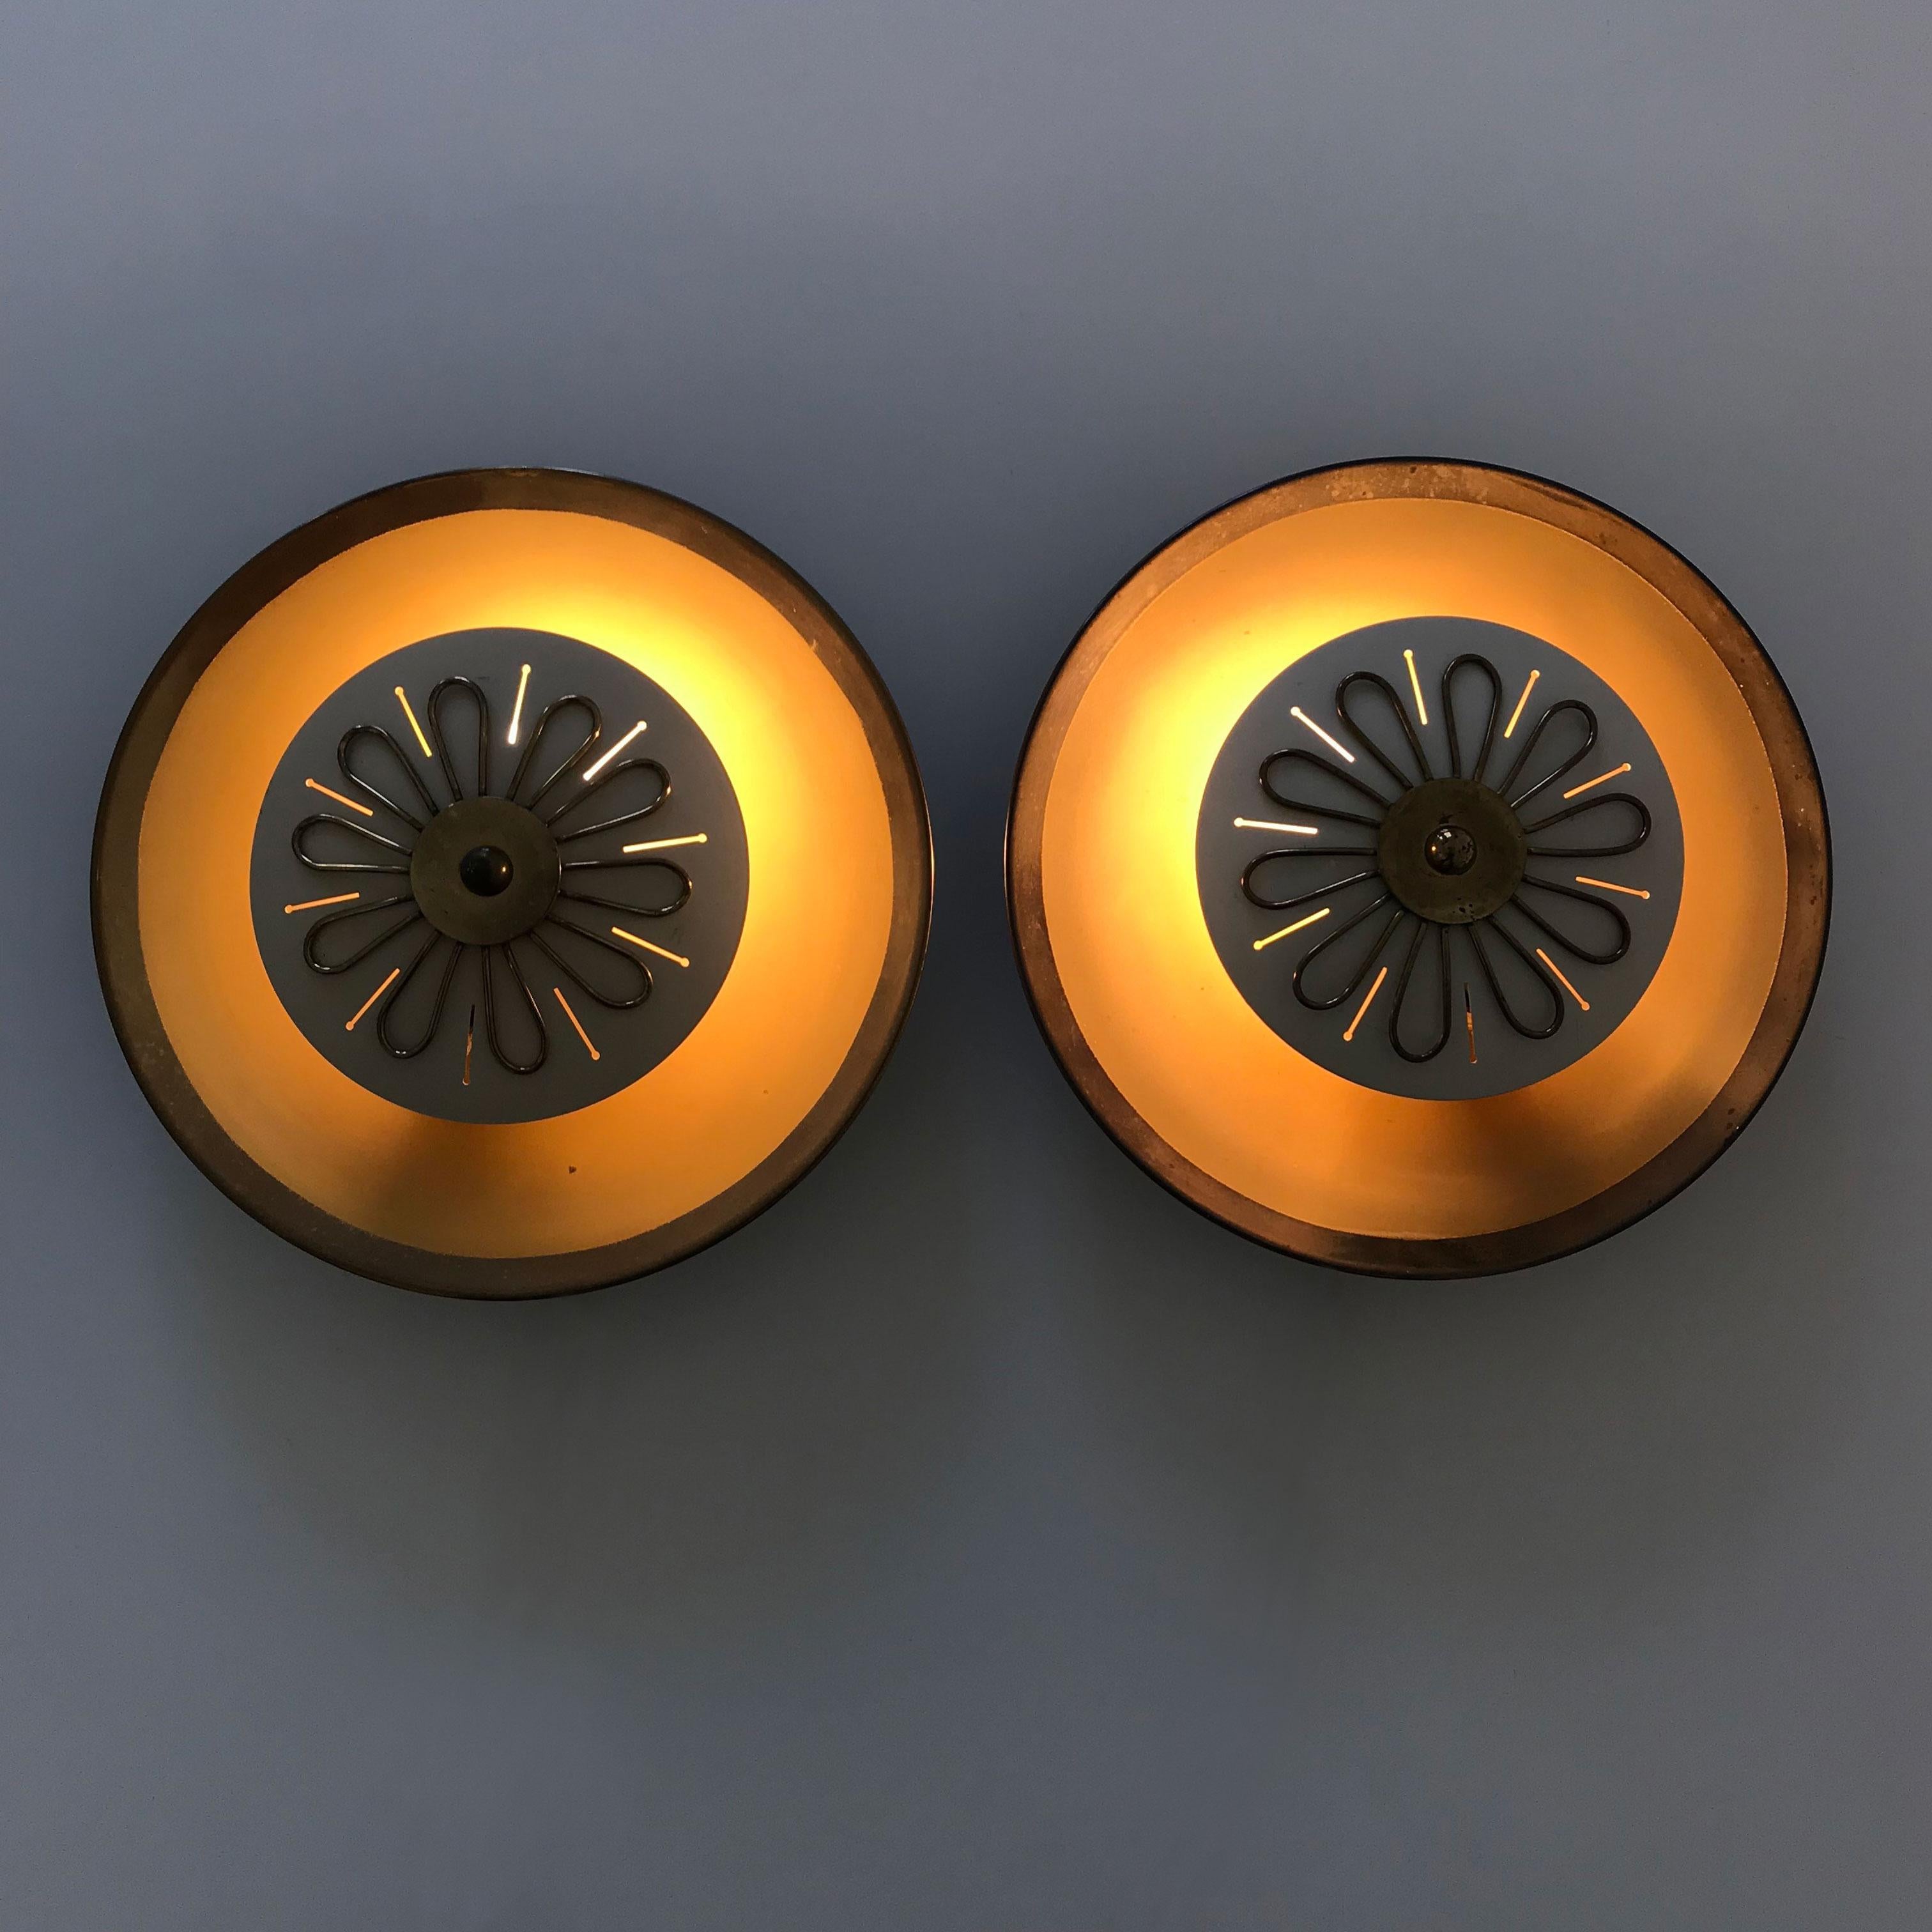 Satz von zwei extrem seltenen und schönen Mid-Century Modern Wandlampen oder flush mounts. Hergestellt wahrscheinlich von Wila, 1950er Jahre, Deutschland.

Die Lampen sind aus Messing gefertigt und benötigen jeweils 1 x E14 Edison-Schraubbirne. Sie